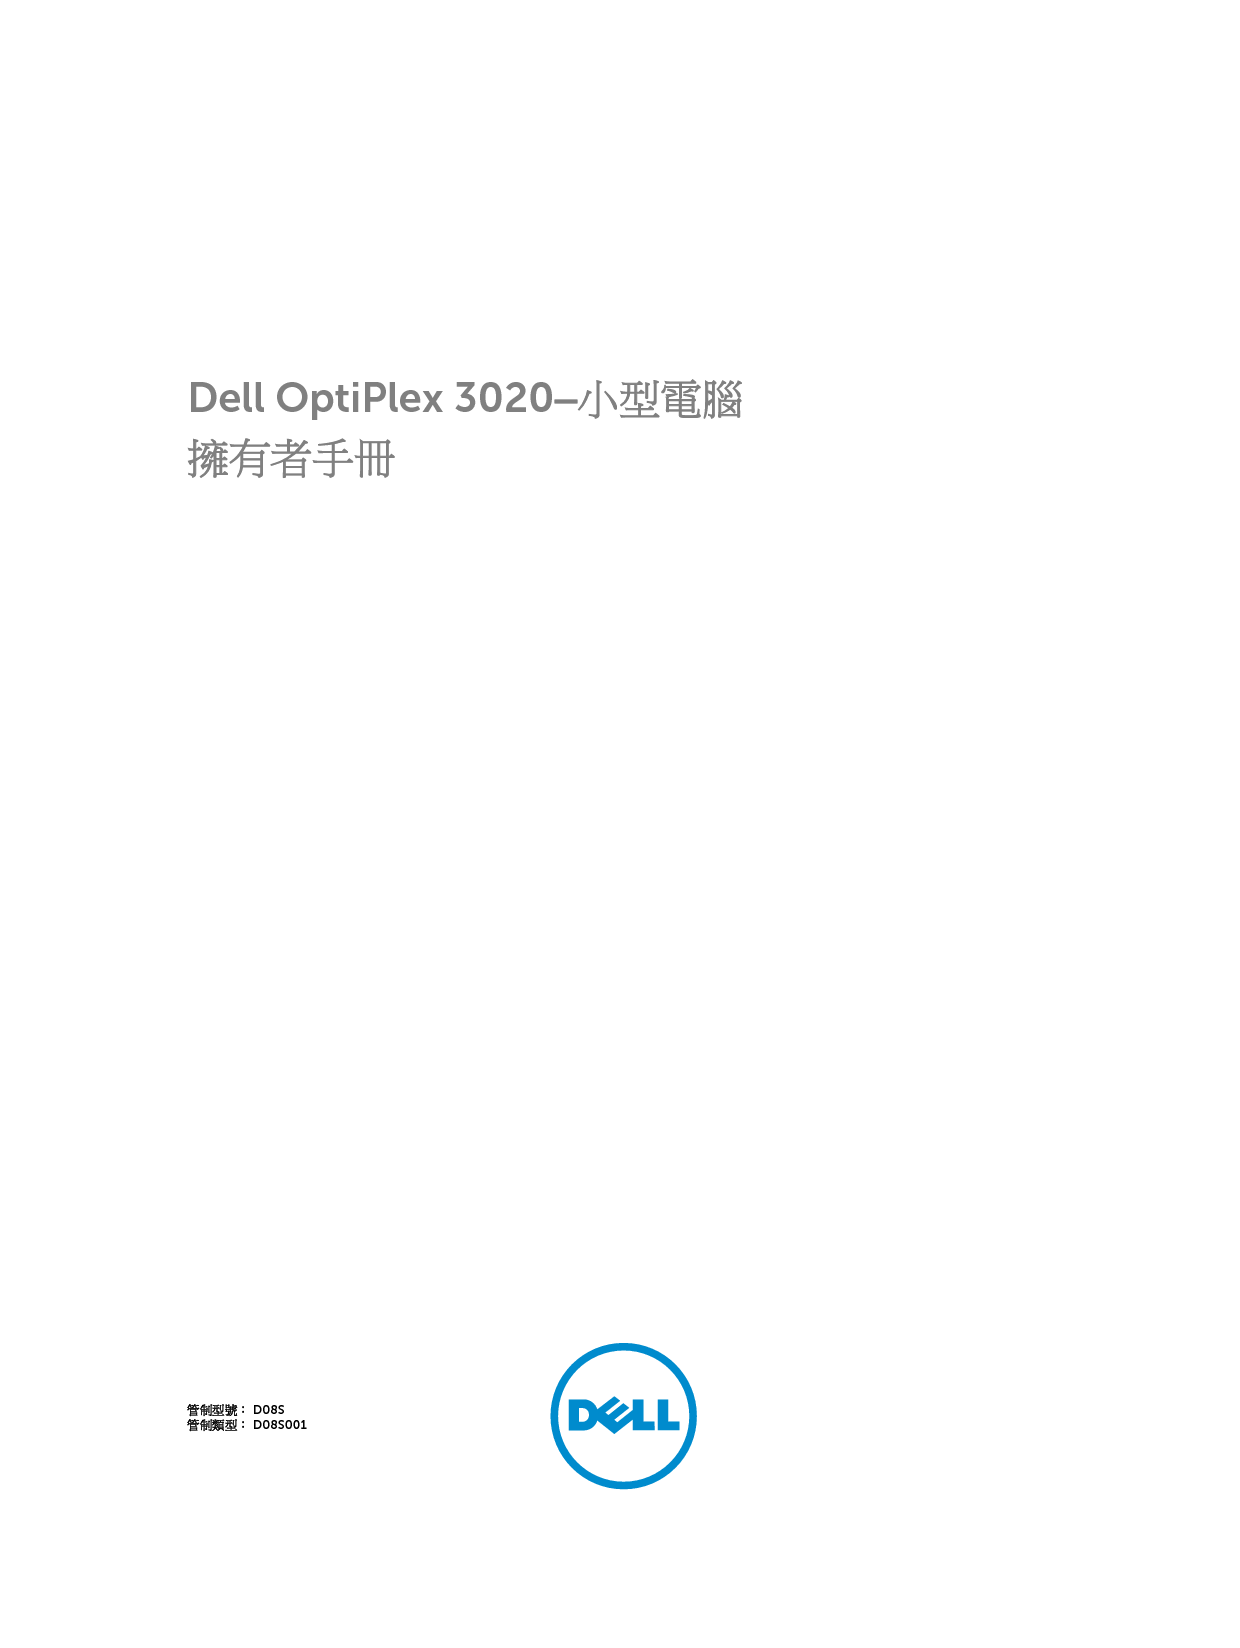 戴尔 Dell Optiplex 3020 小型 繁体 用户手册 封面